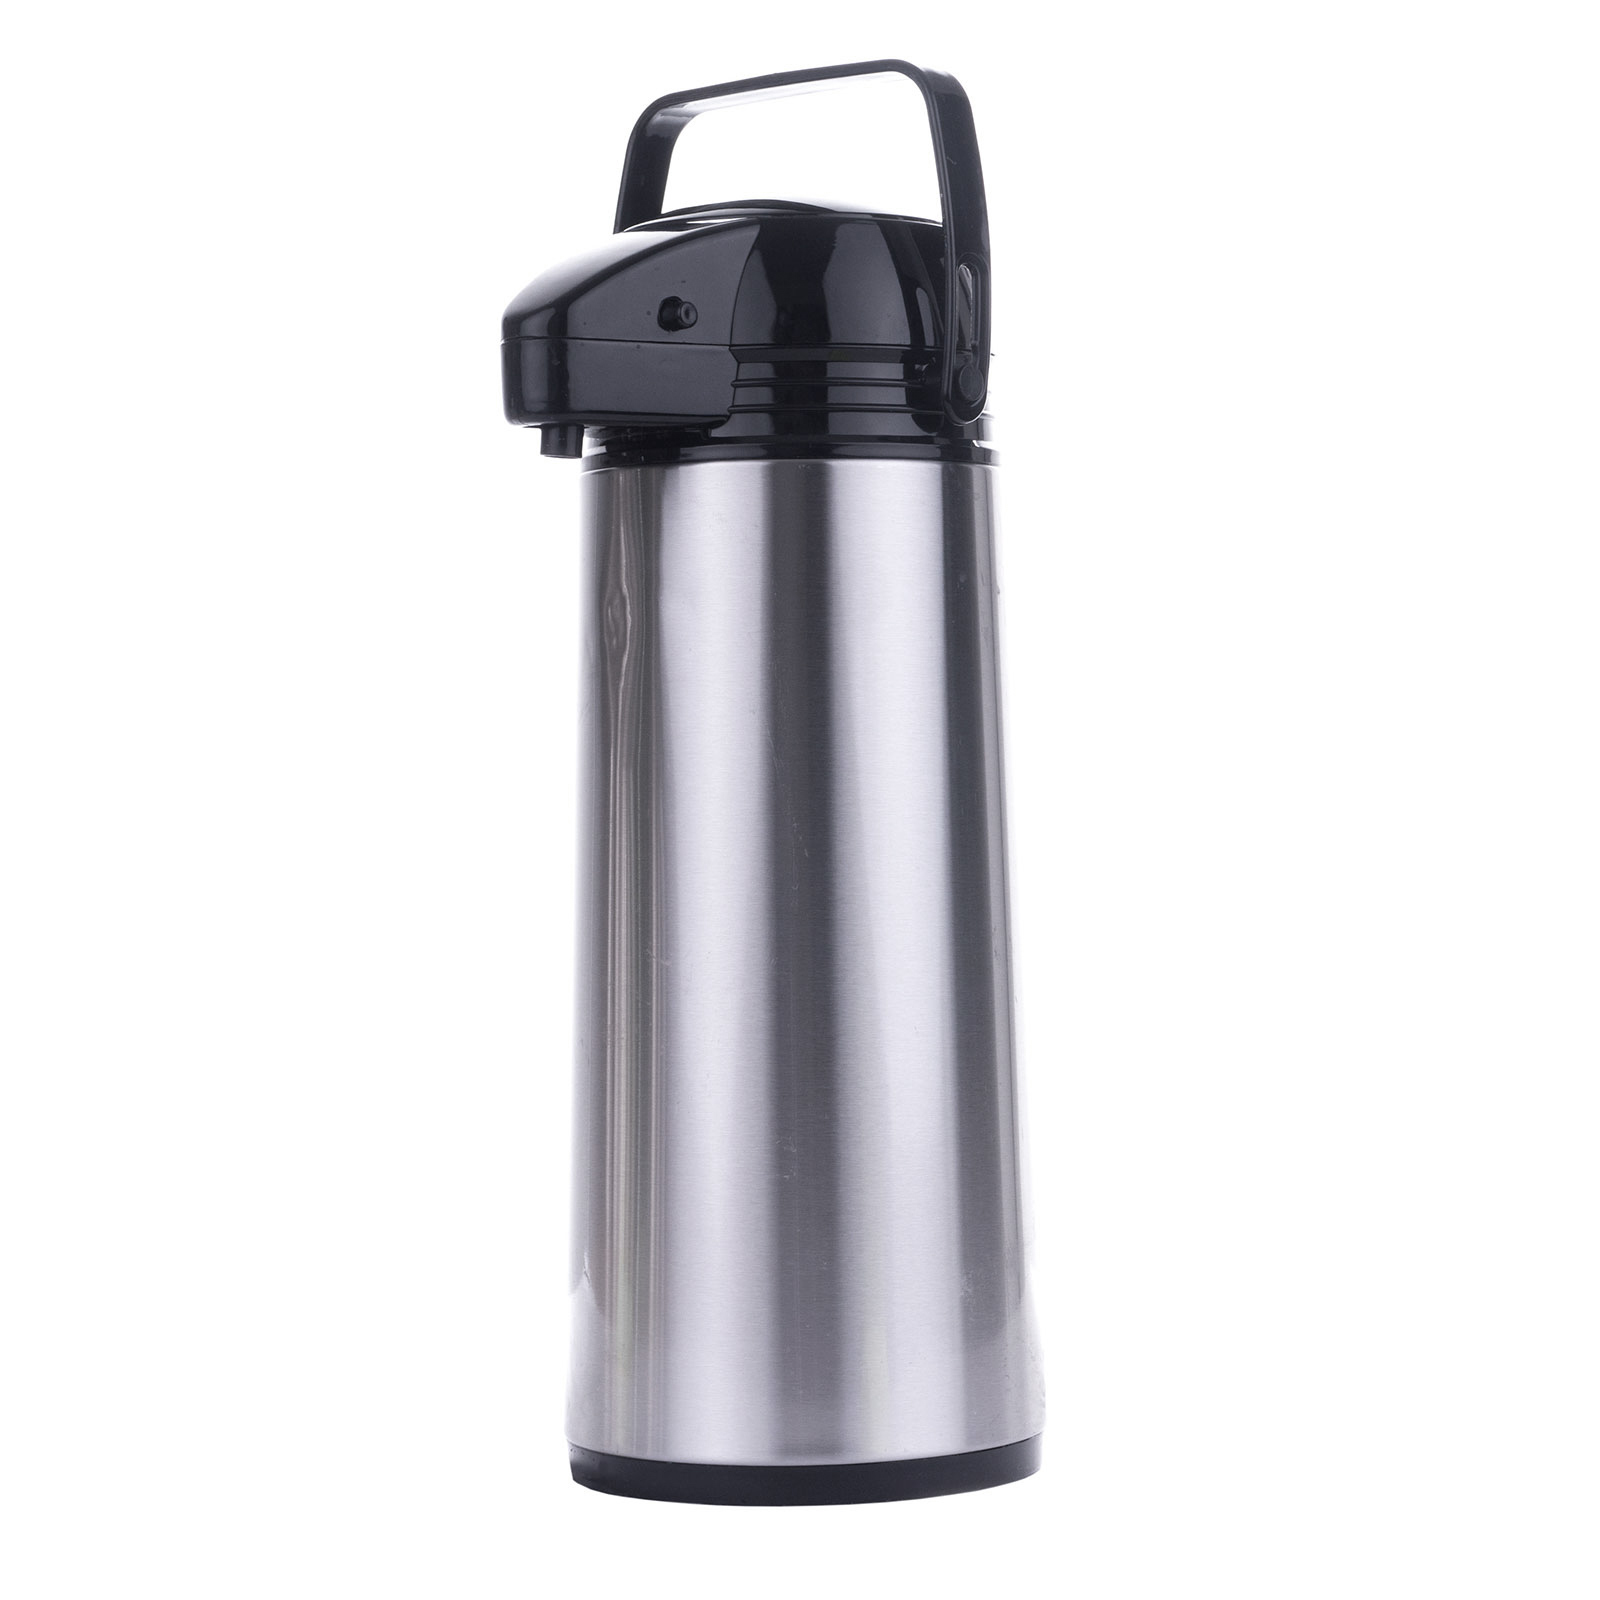 Isolierkanne Thermo Kanne Kaffeekanne Edelstahl Airpot 9 Liter Pumpkanne